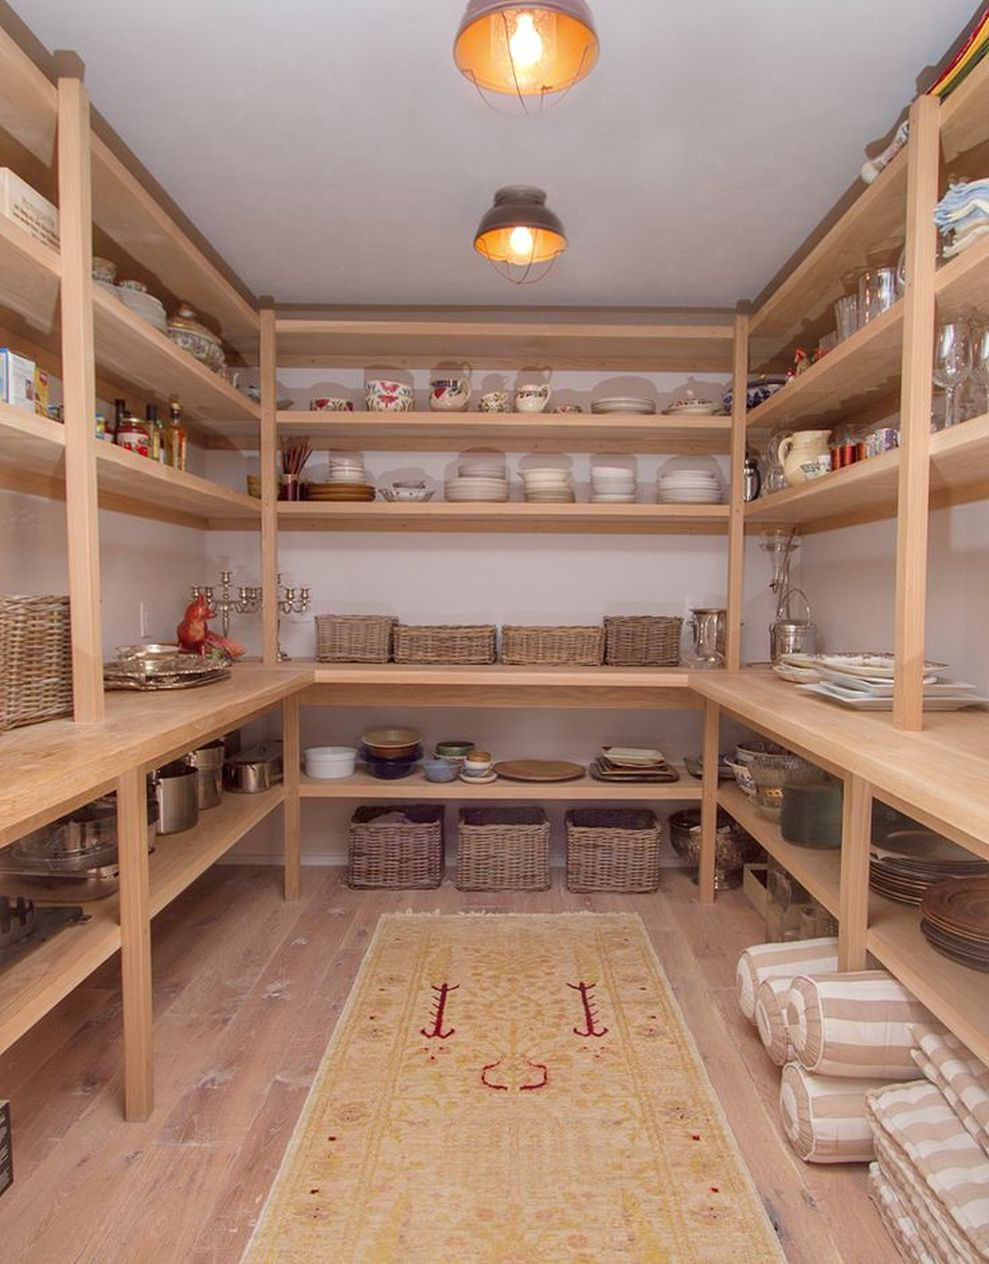 DIY Closet Shelves Plans
 72 Easy and Affordable DIY Wood Closet Shelves Ideas